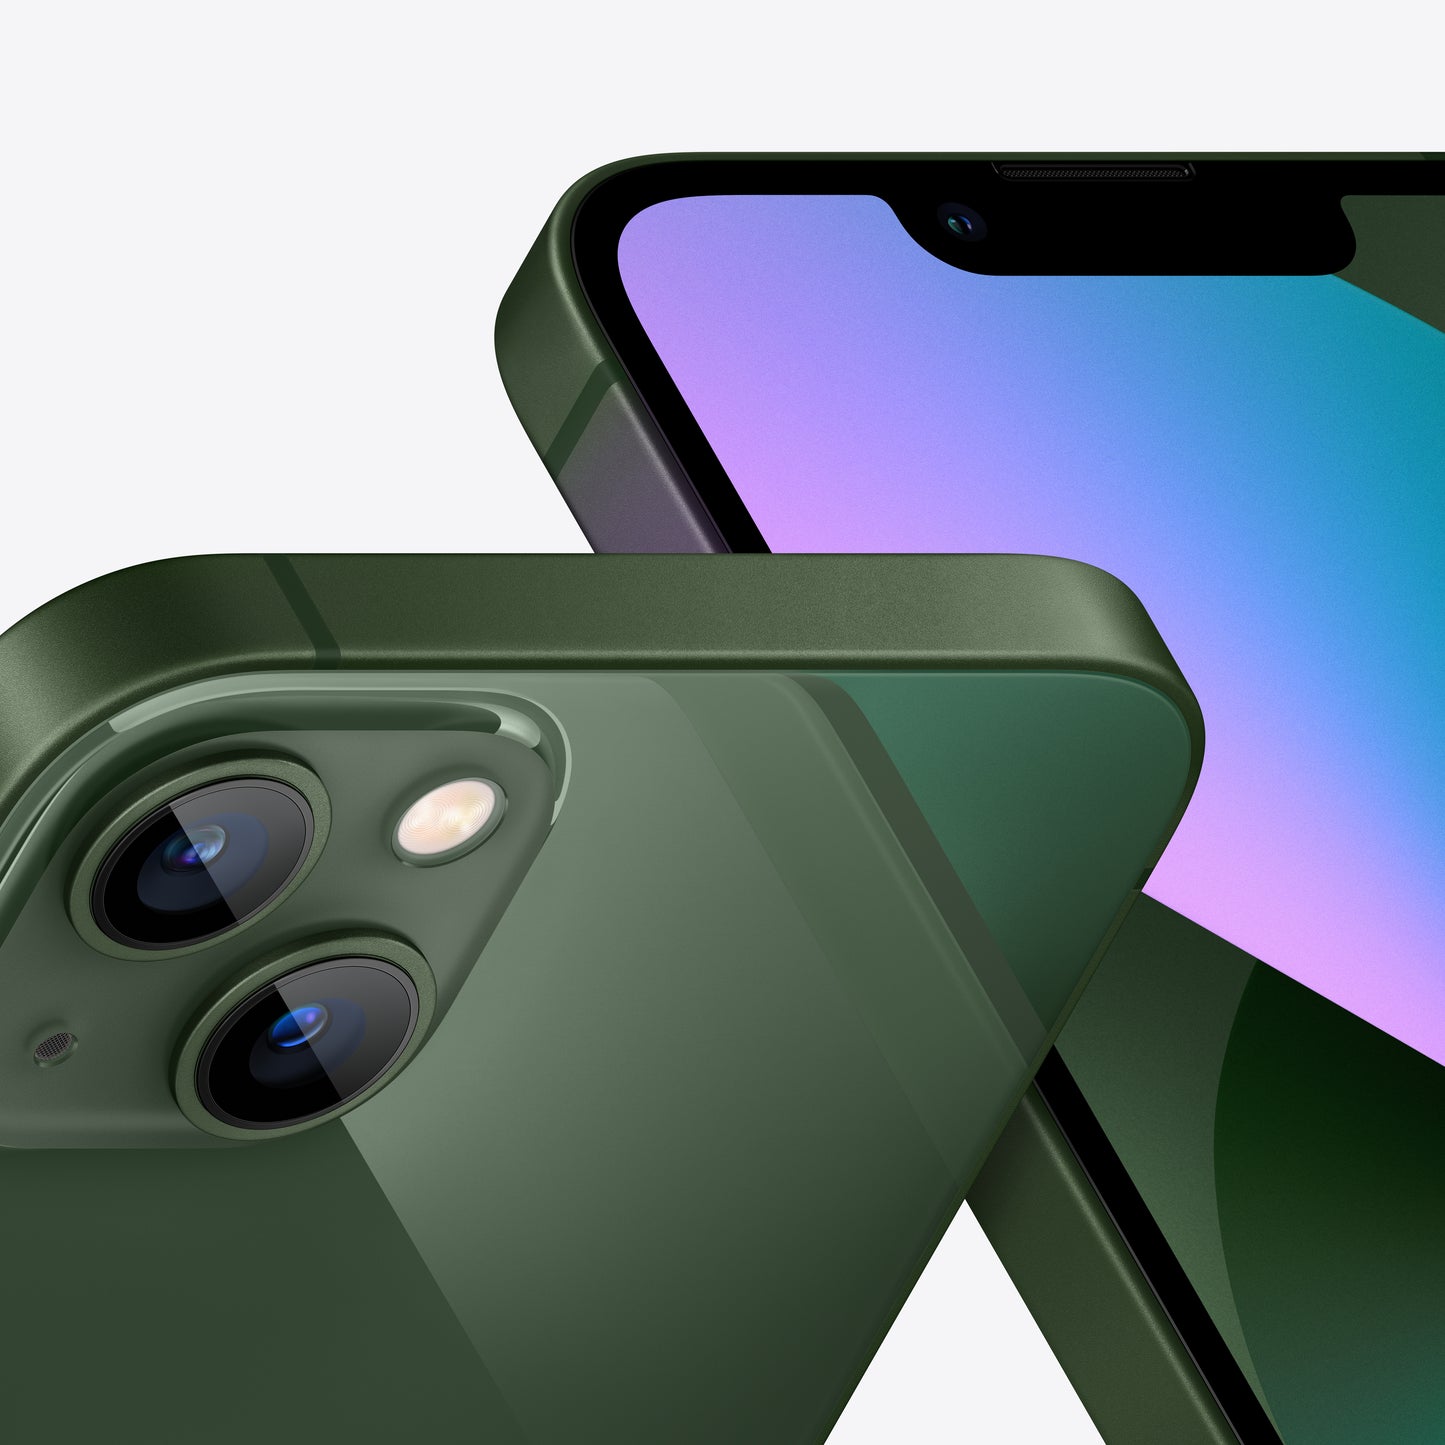 Apple iPhone 13 mini | Green